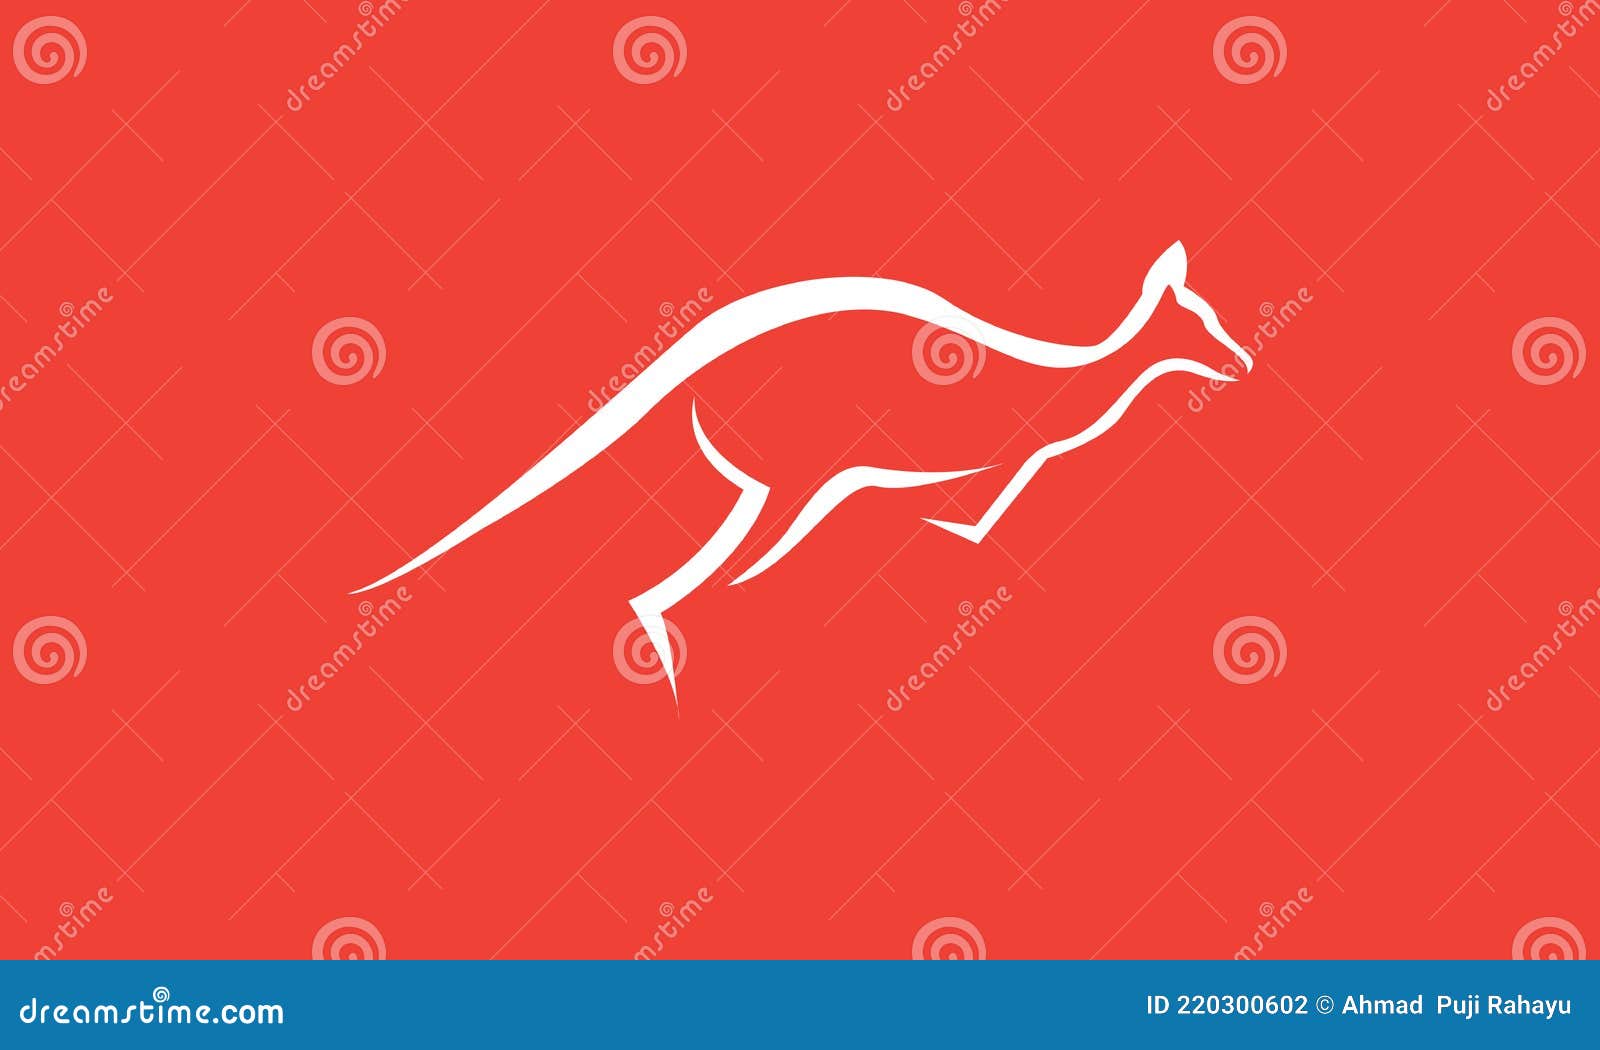 Hãy xem hình ảnh liên quan đến biểu tượng hươu kangaroo để thấy sự tinh tế và ngộ nghĩnh của nó trong logo.